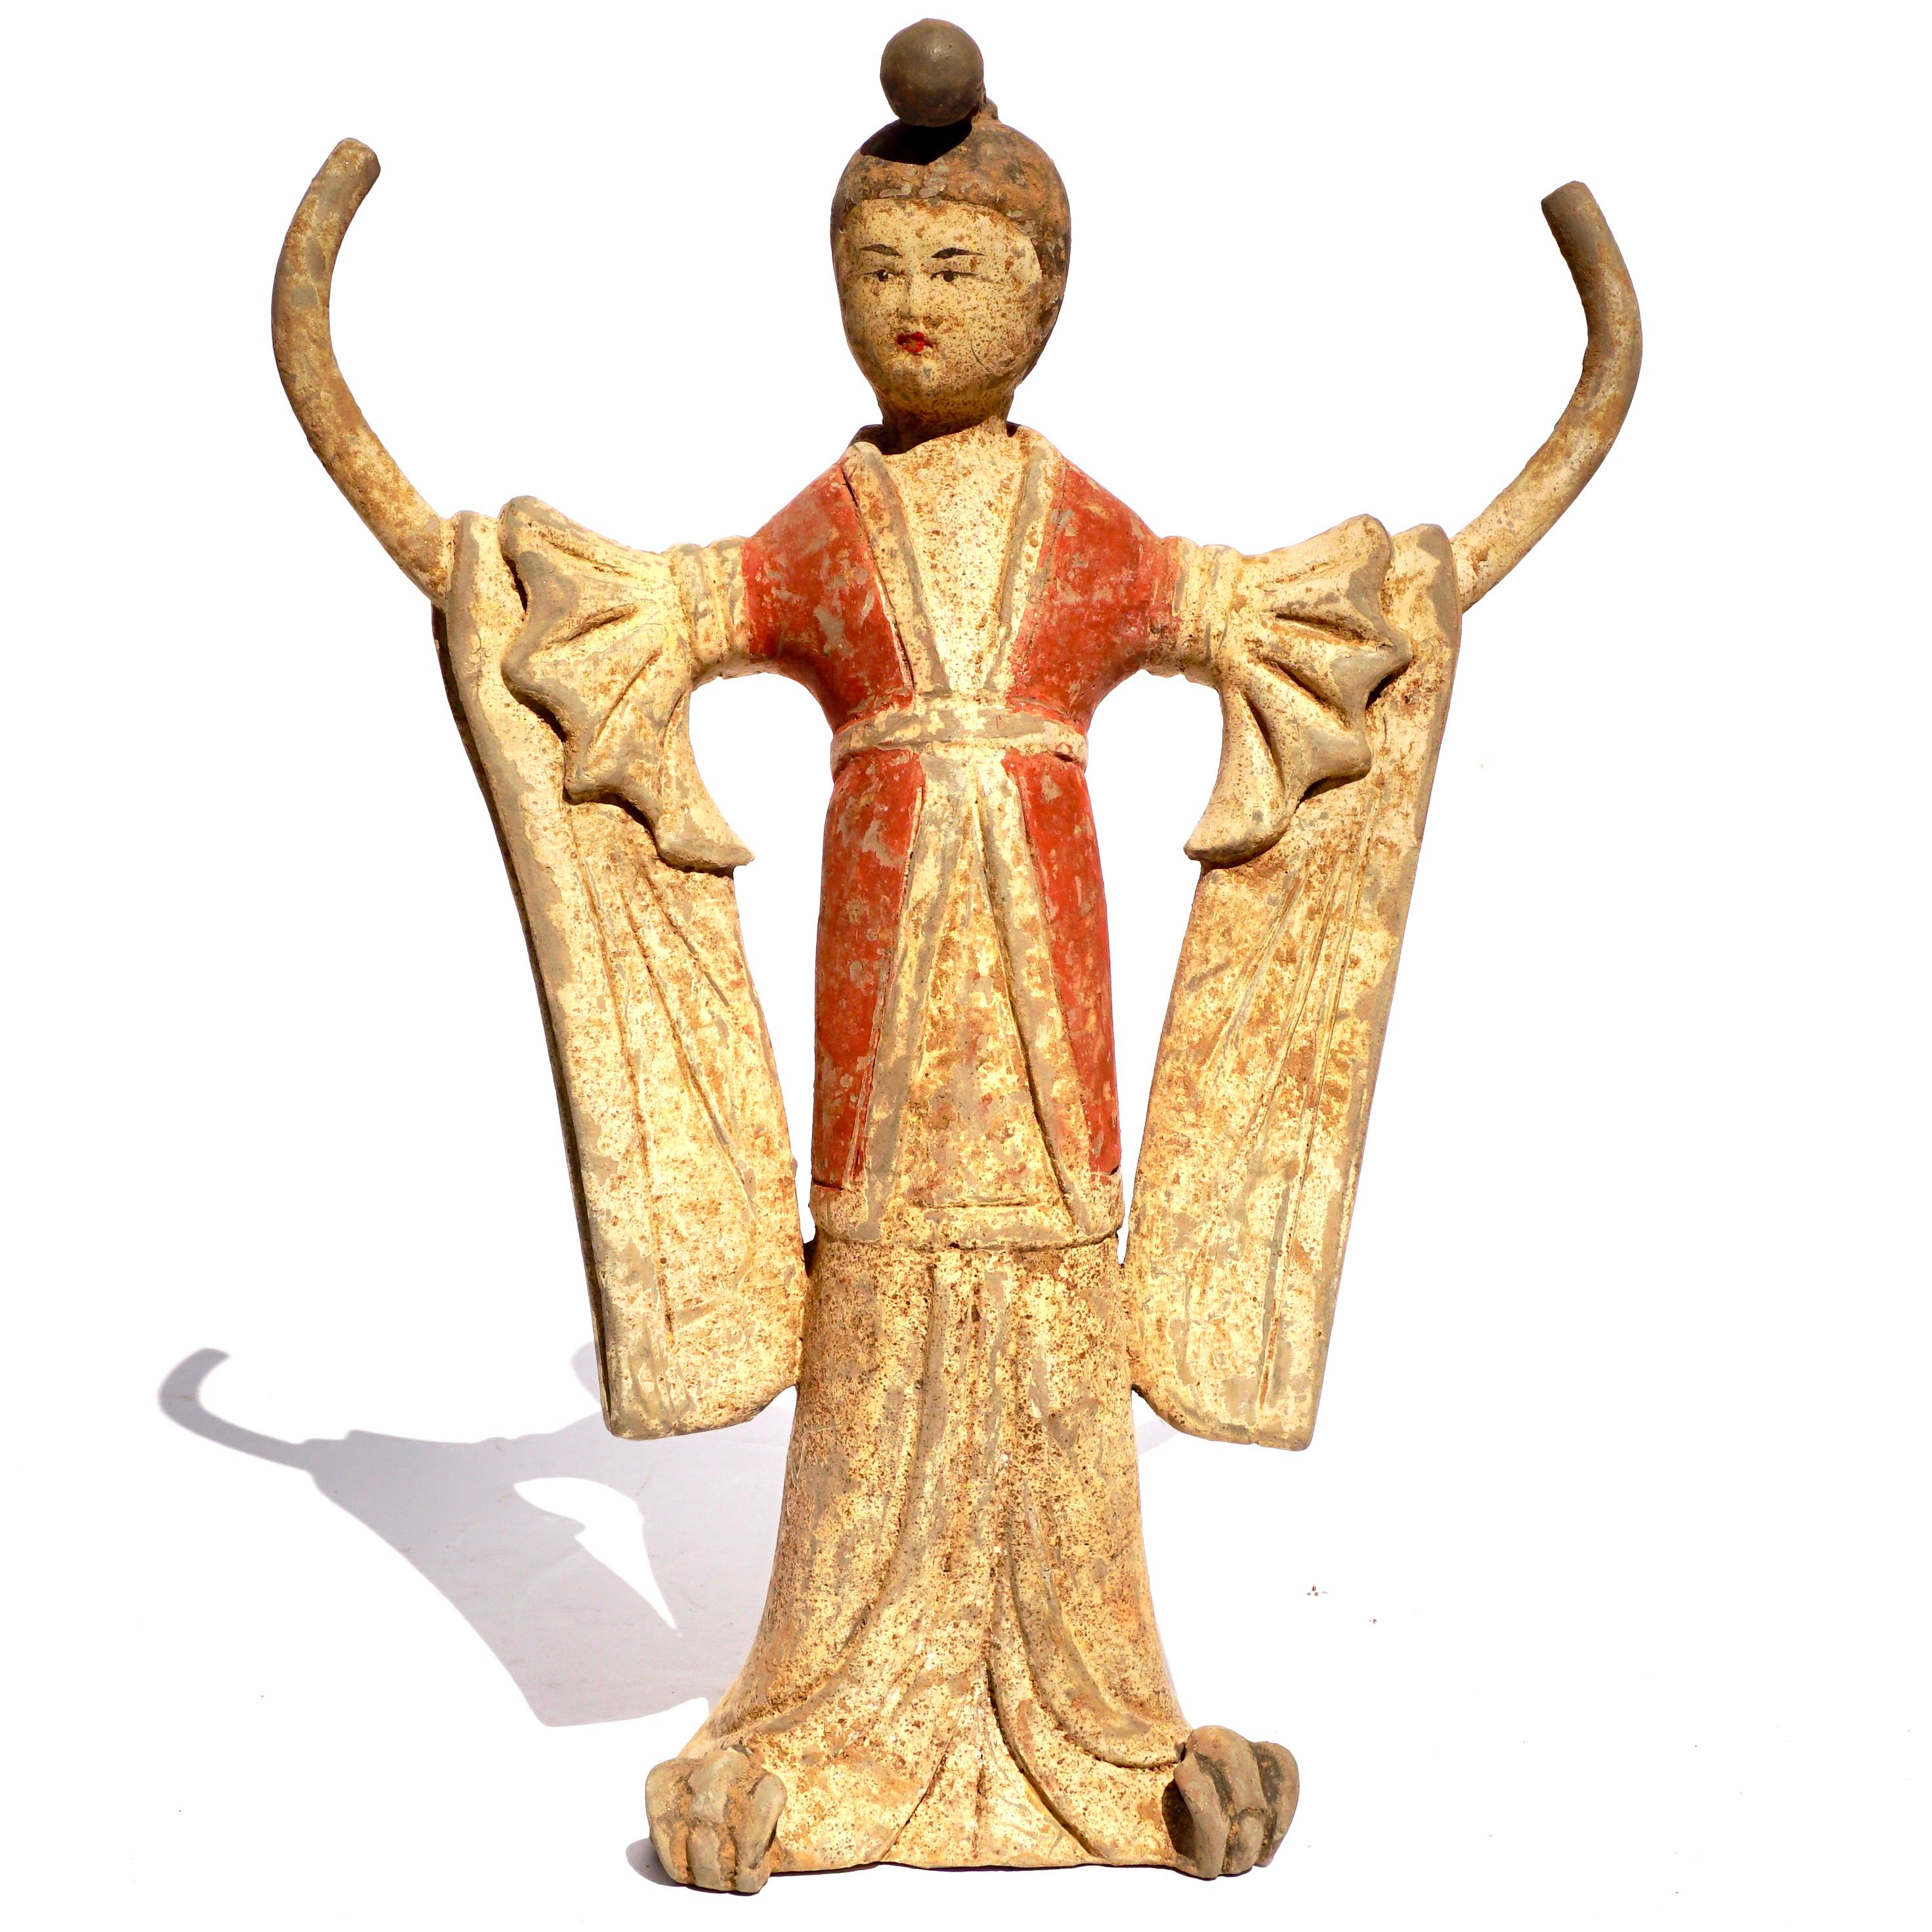 Danseuse en poterie peinte de la dynastie chinoise Tang TL Testé. Ca. 618-907 AD 

Une délicate danseuse portant une longue robe fluide aux manches drapées et ailées. La robe longue découvre ses chaussures retournées. Ses deux bras sont en l'air,